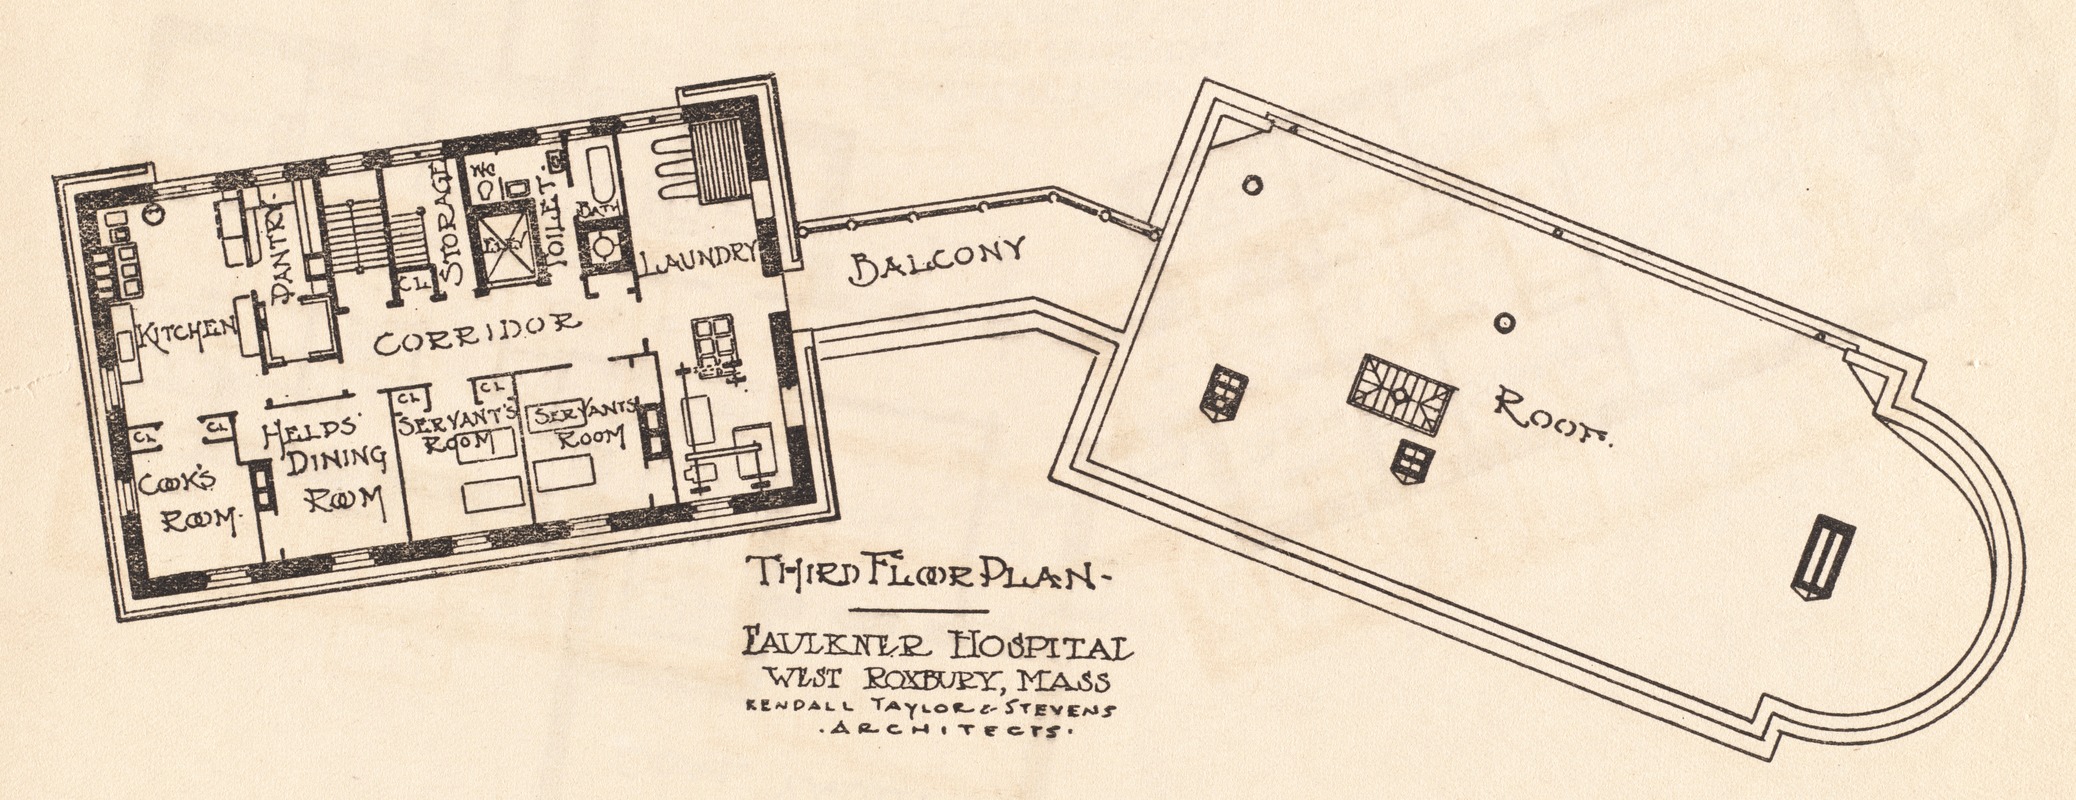 Faulkner Hospital third floor plan